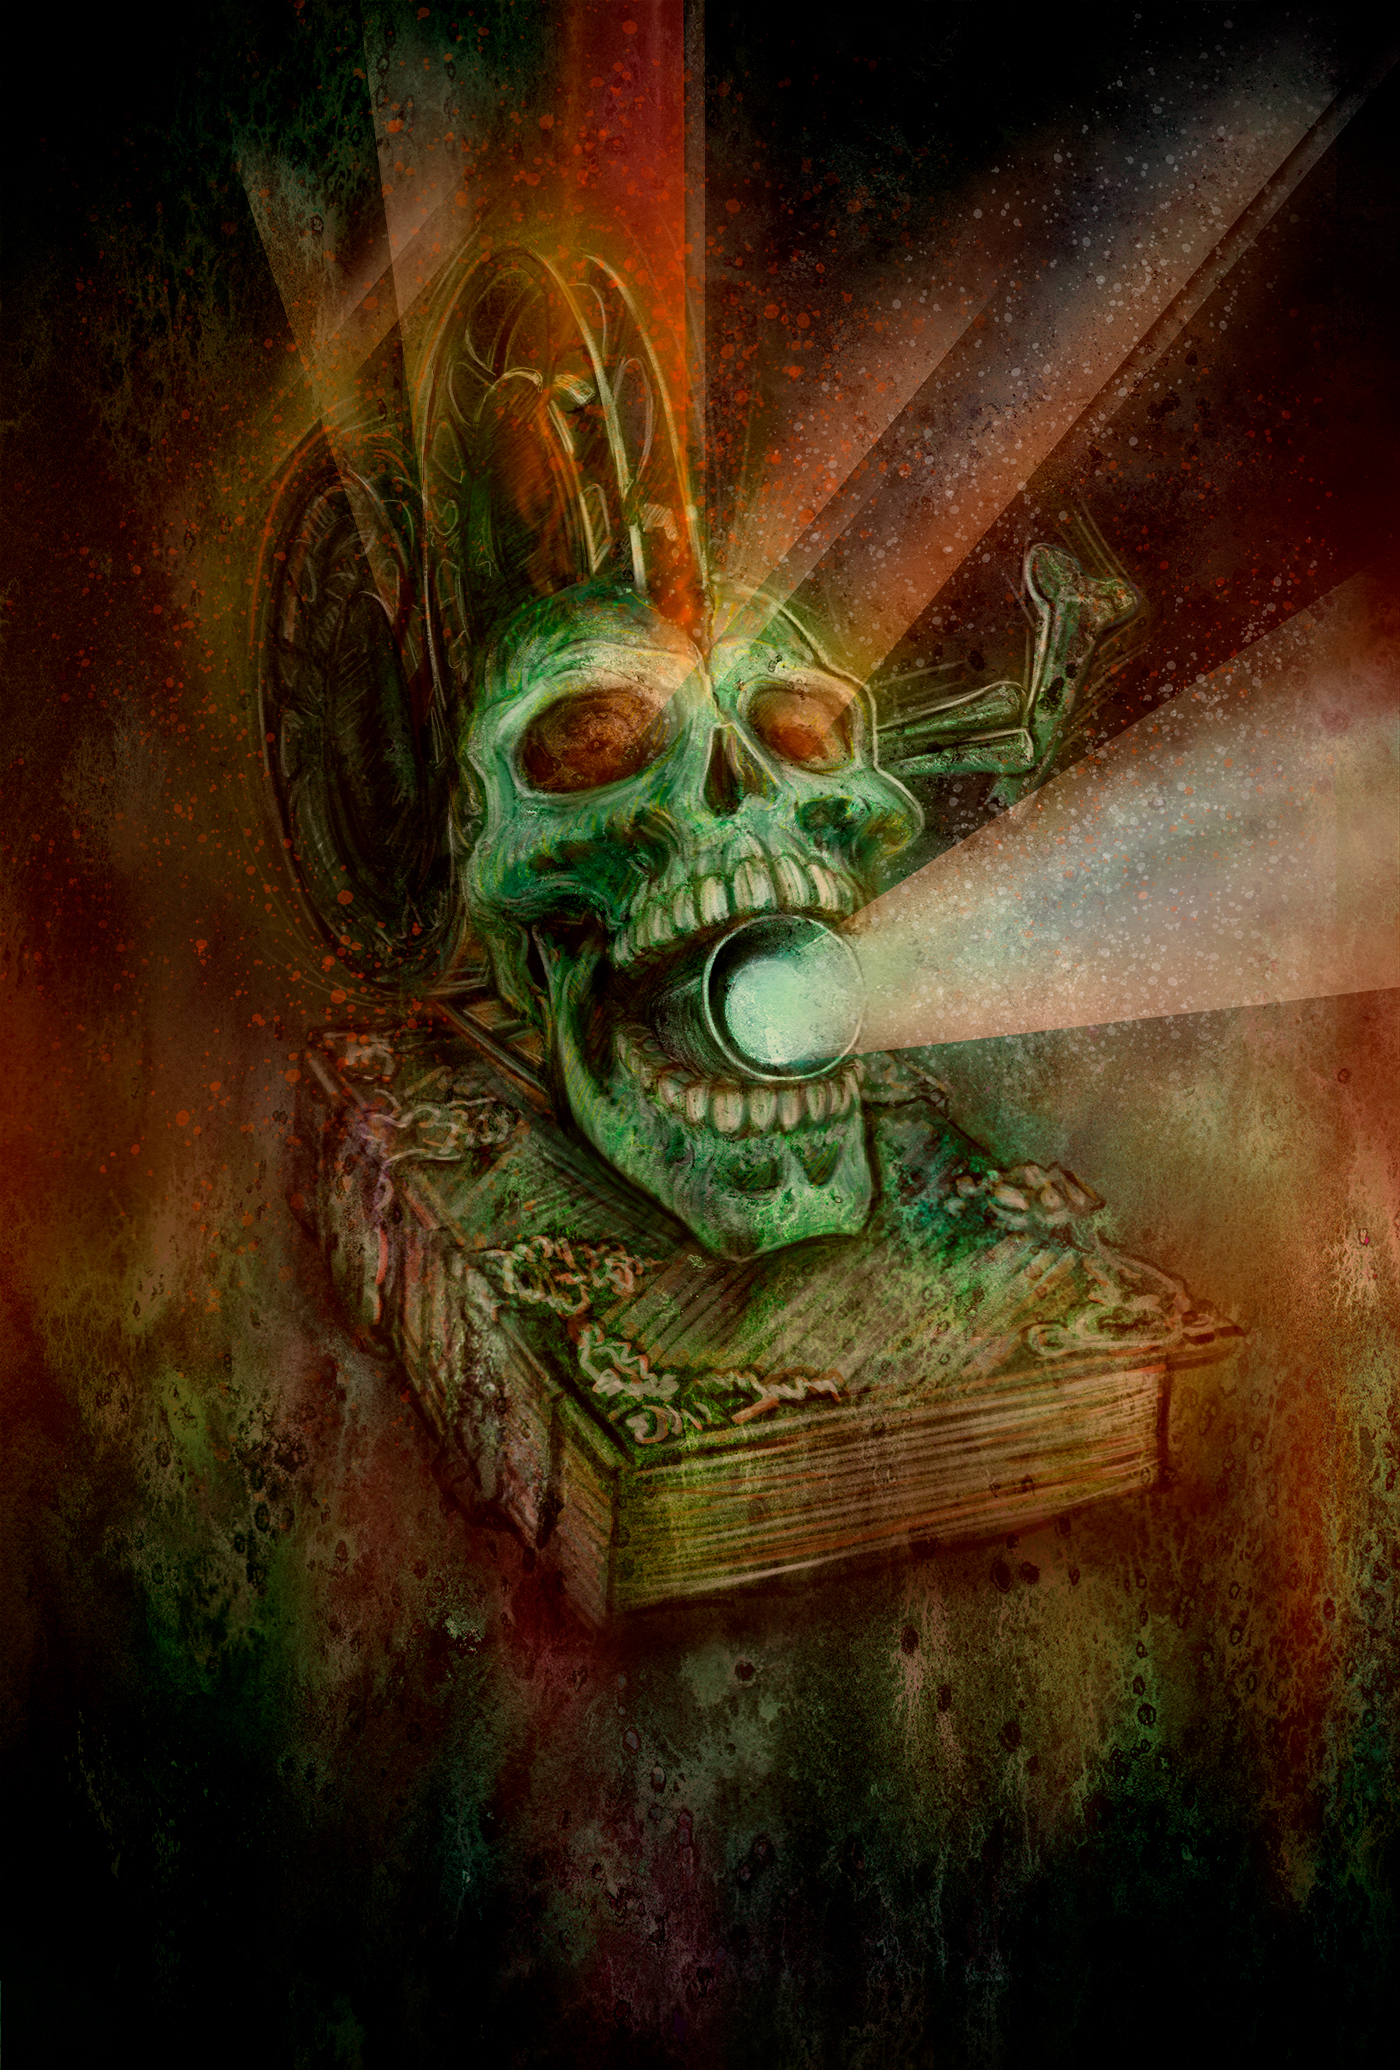 digital illustration movie festival 80s Horror Movies skull Projector